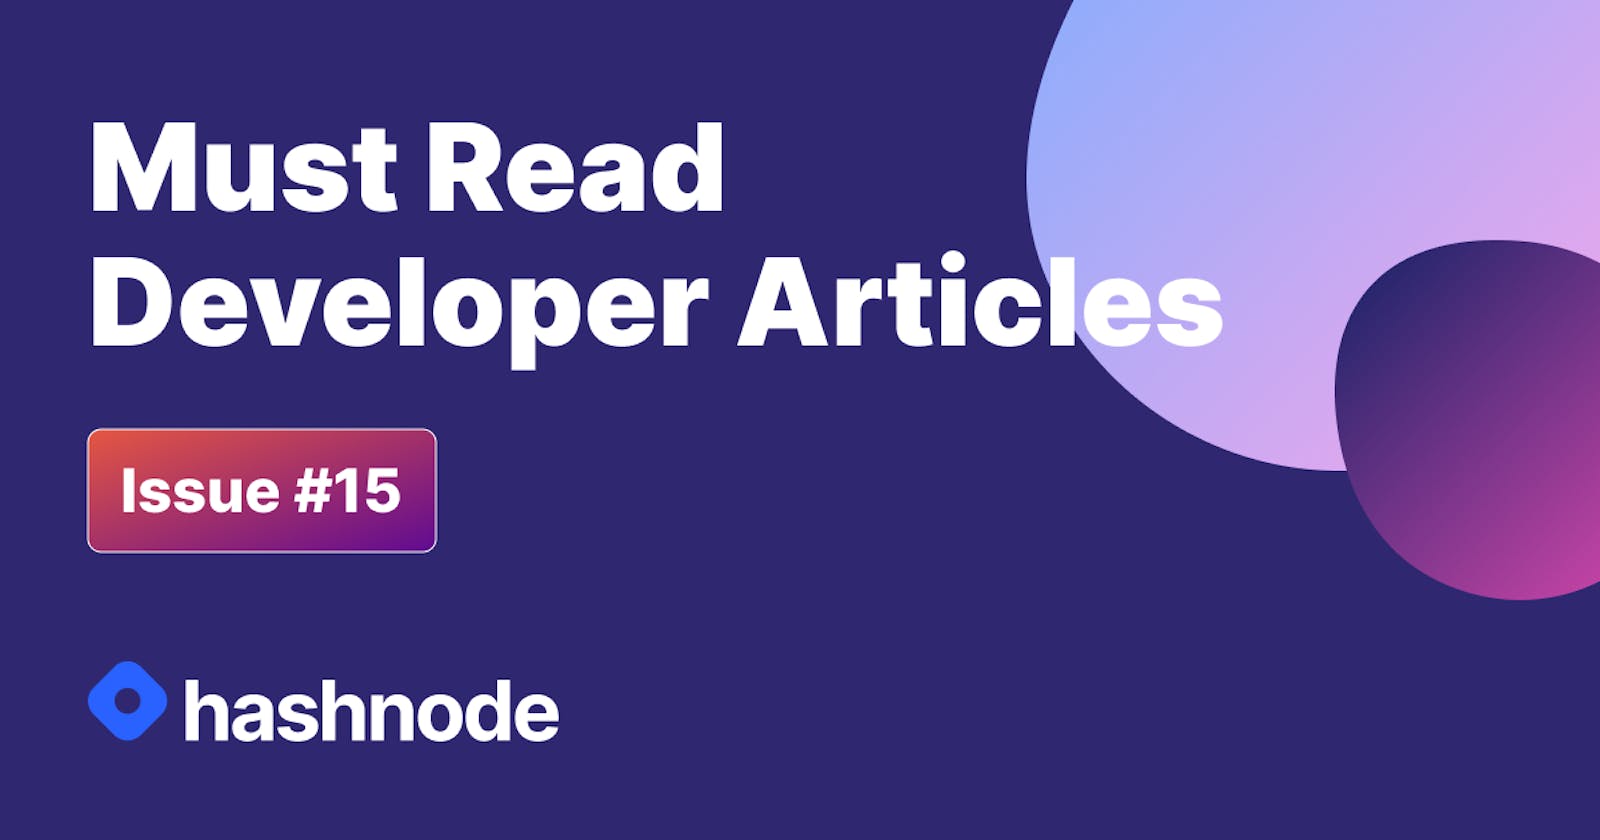 Must Read Developer Articles on Hashnode - #15